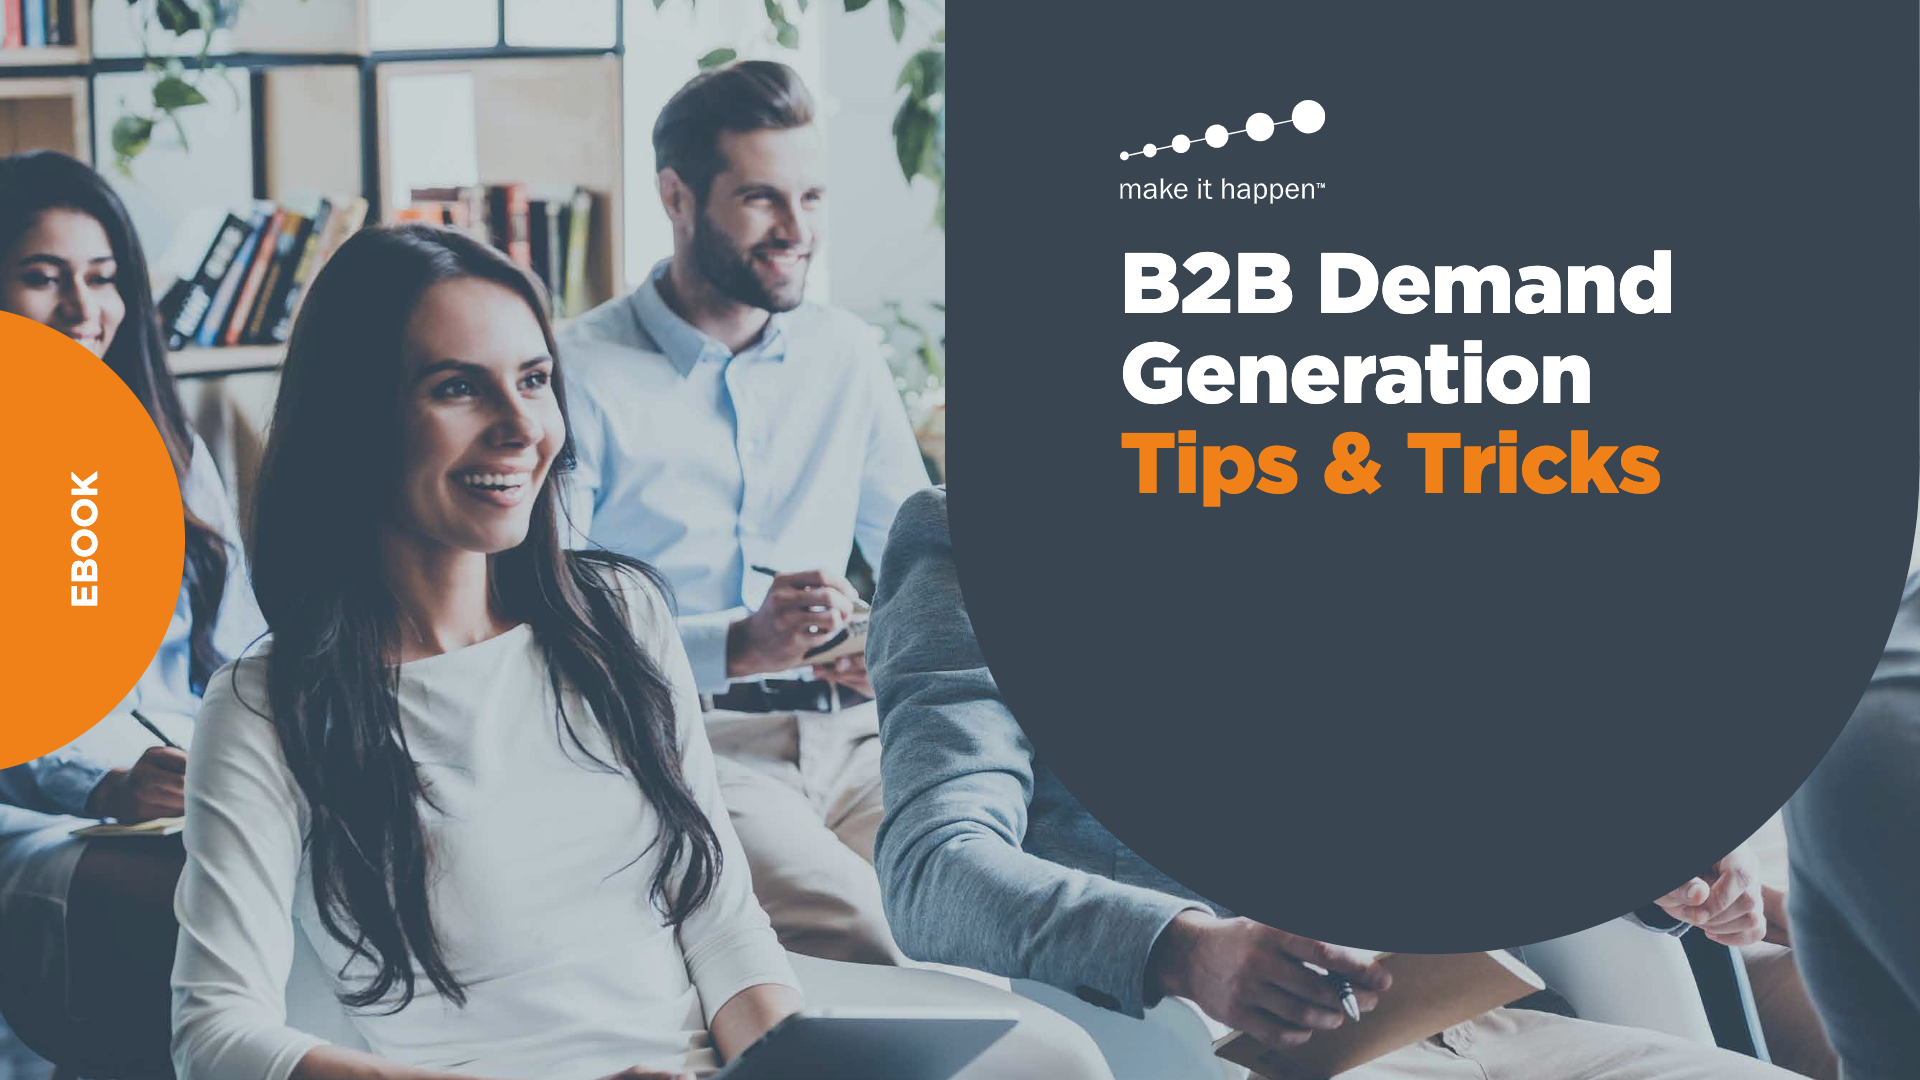 B2B Demand Generation Tips & Tricks